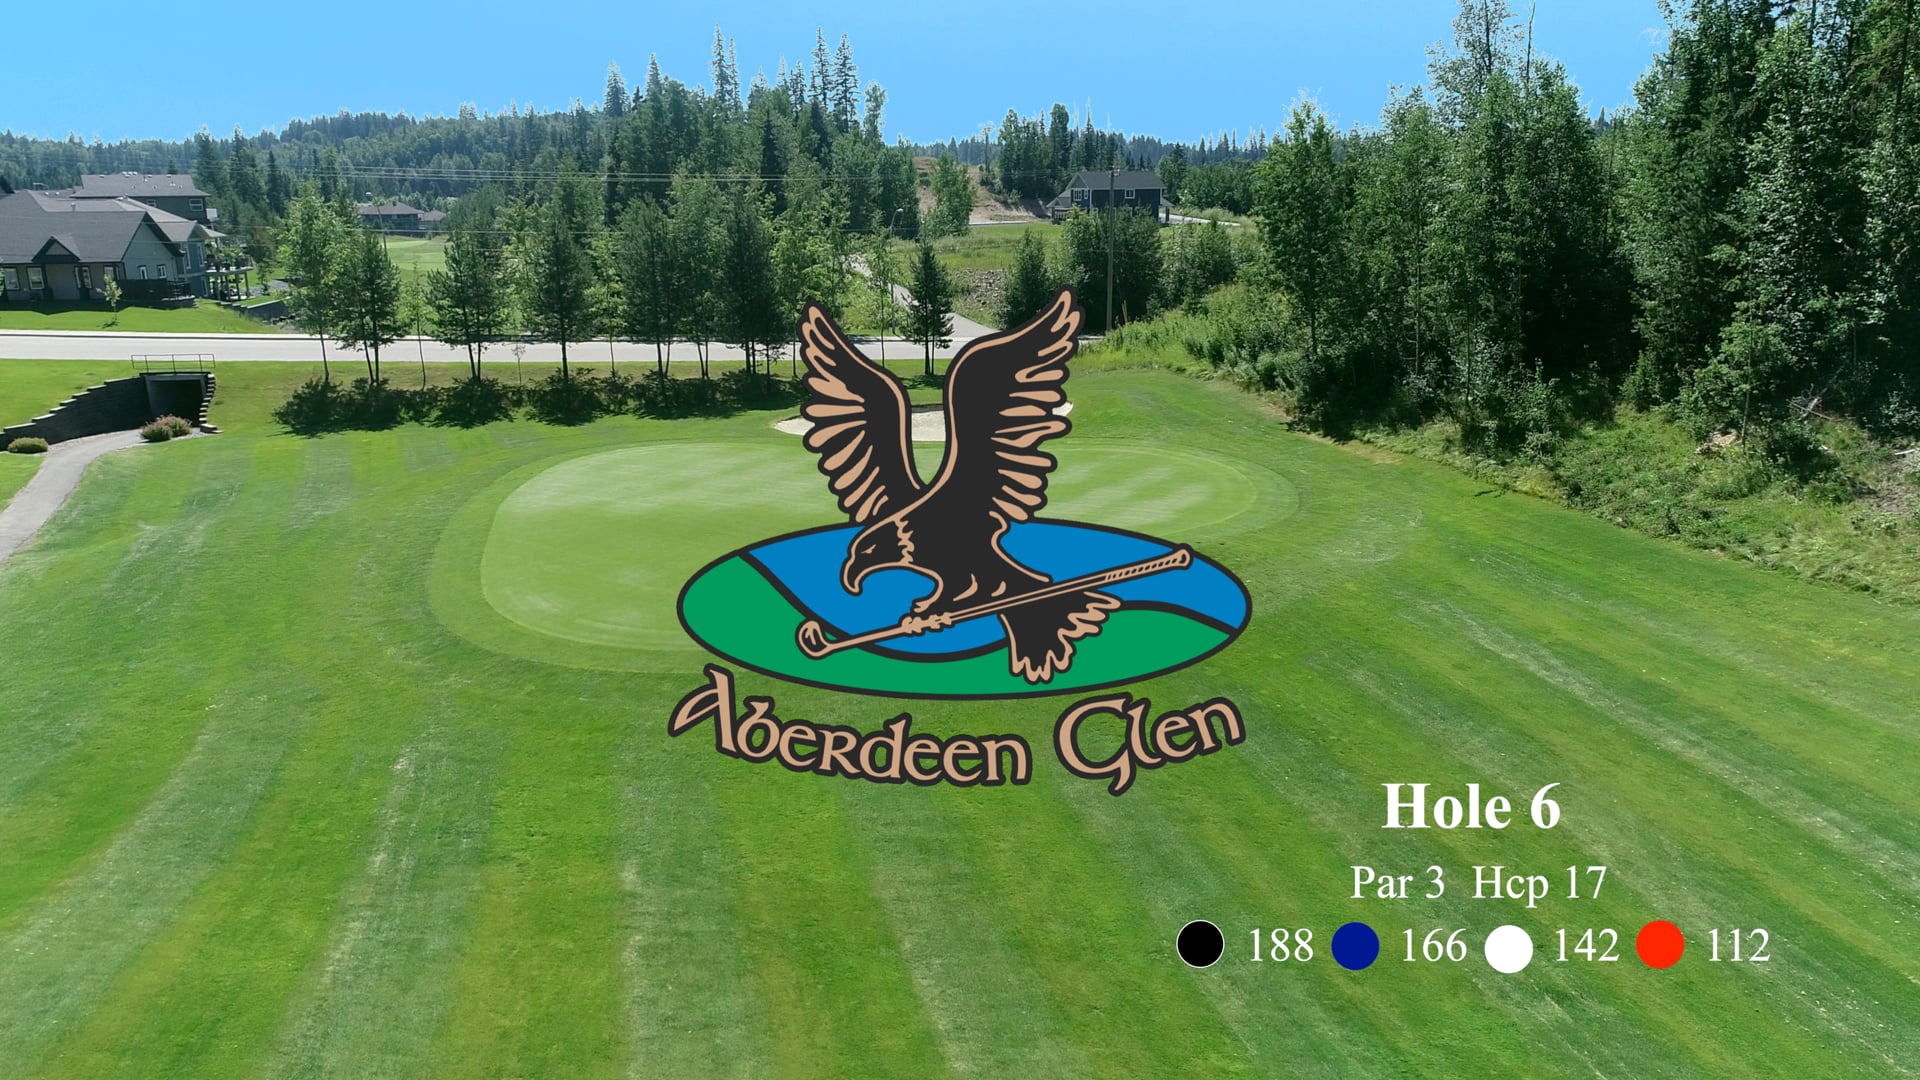 Aberdeen Glen Hole #6